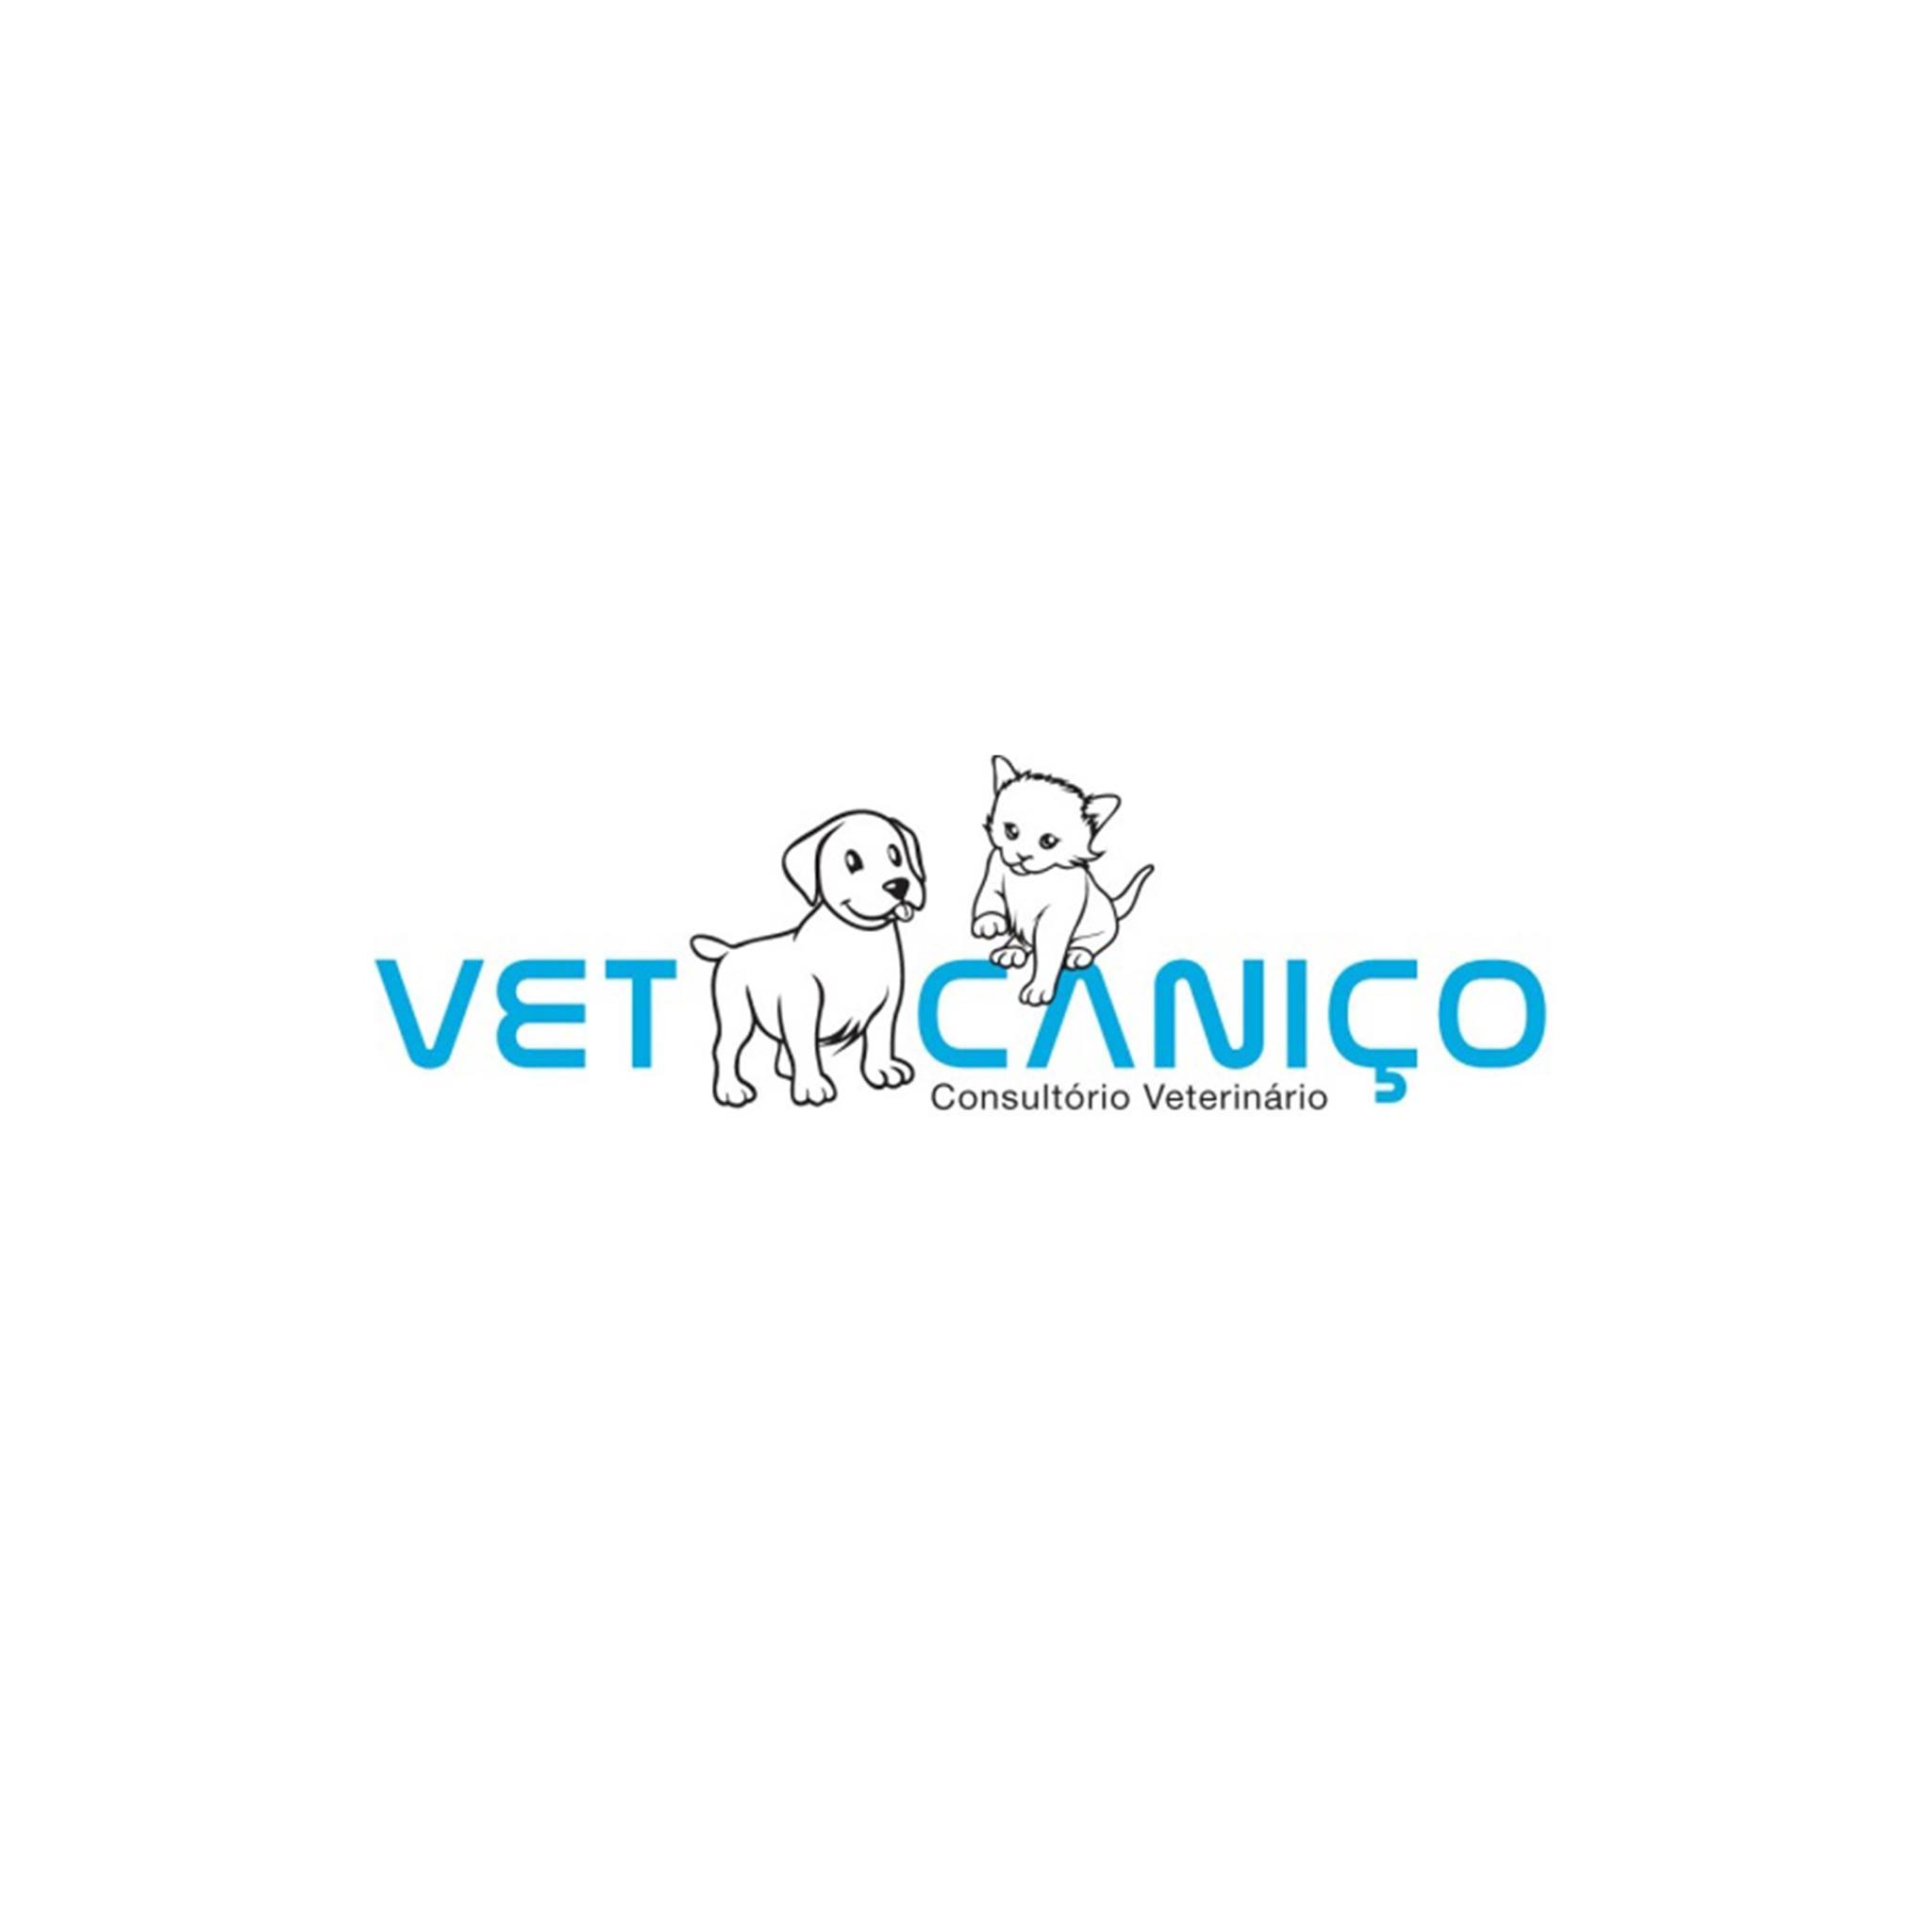 VetCaniço - Consultório Vet.